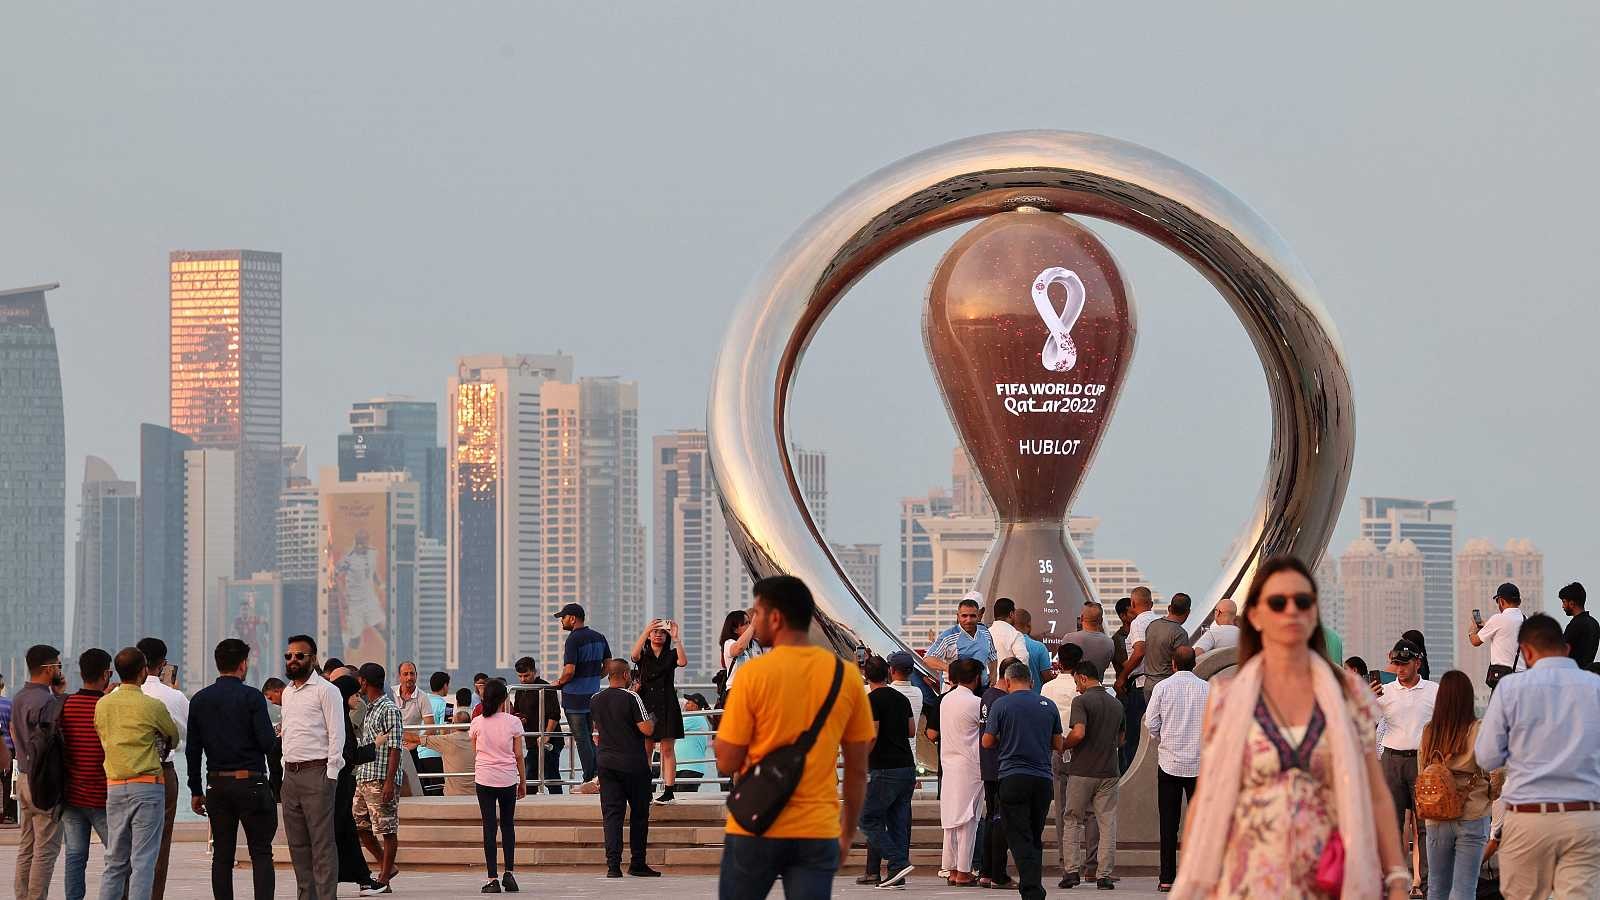 Demam Piala Dunia 2022 di Qatar. (Foto: dok/Ngopibareng.id)